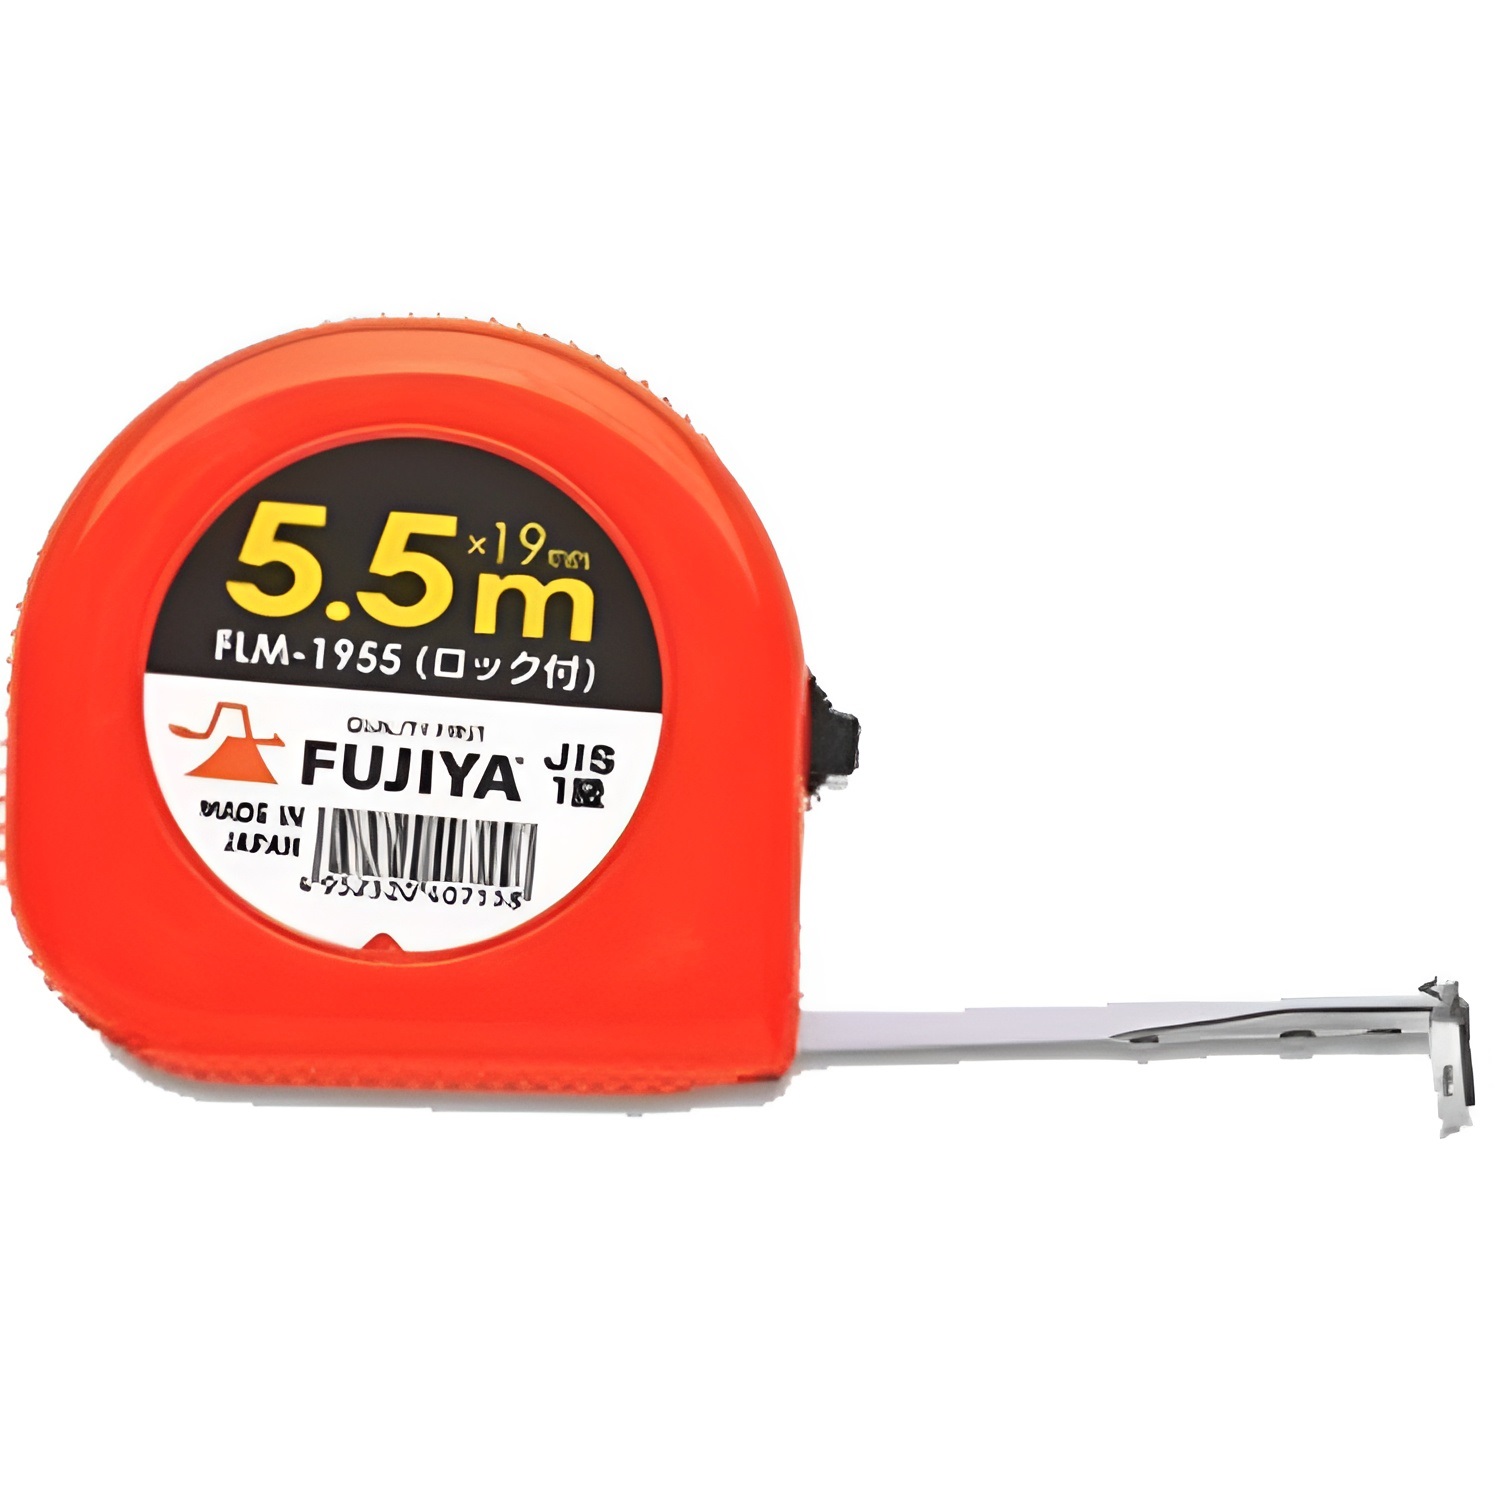 Hình ảnh 4 của mặt hàng Thước dây 19mmX5.5MM Fujiya FLM-1955